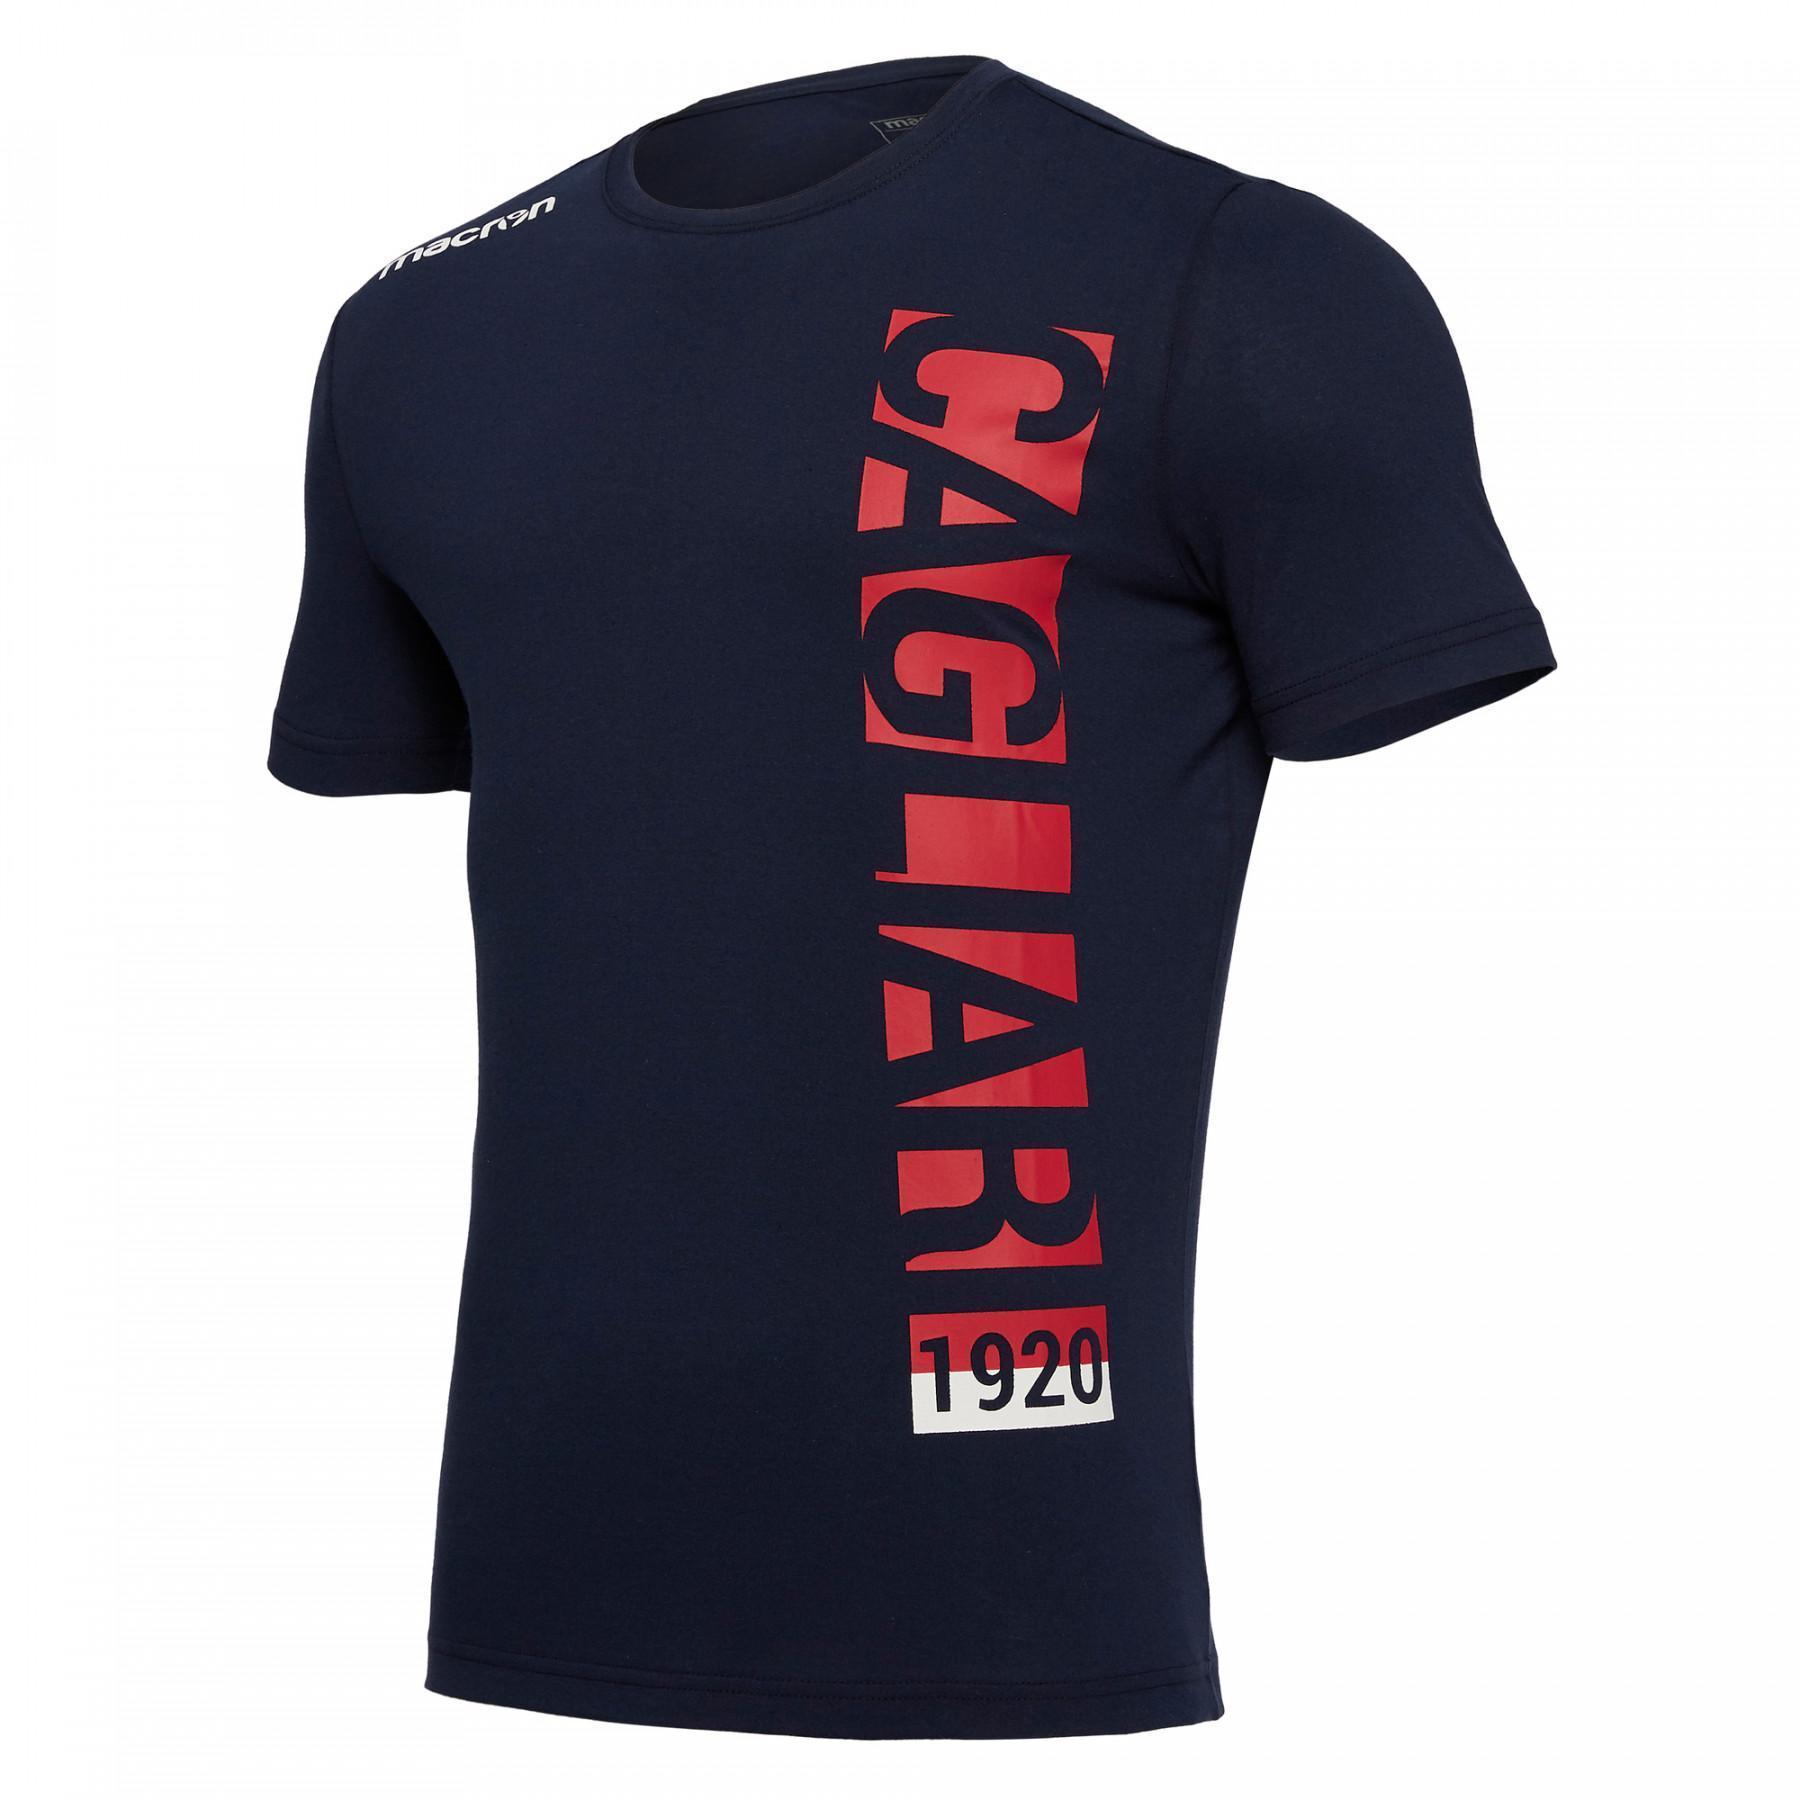 Camiseta Cagliari Calcio 18/19 Fan